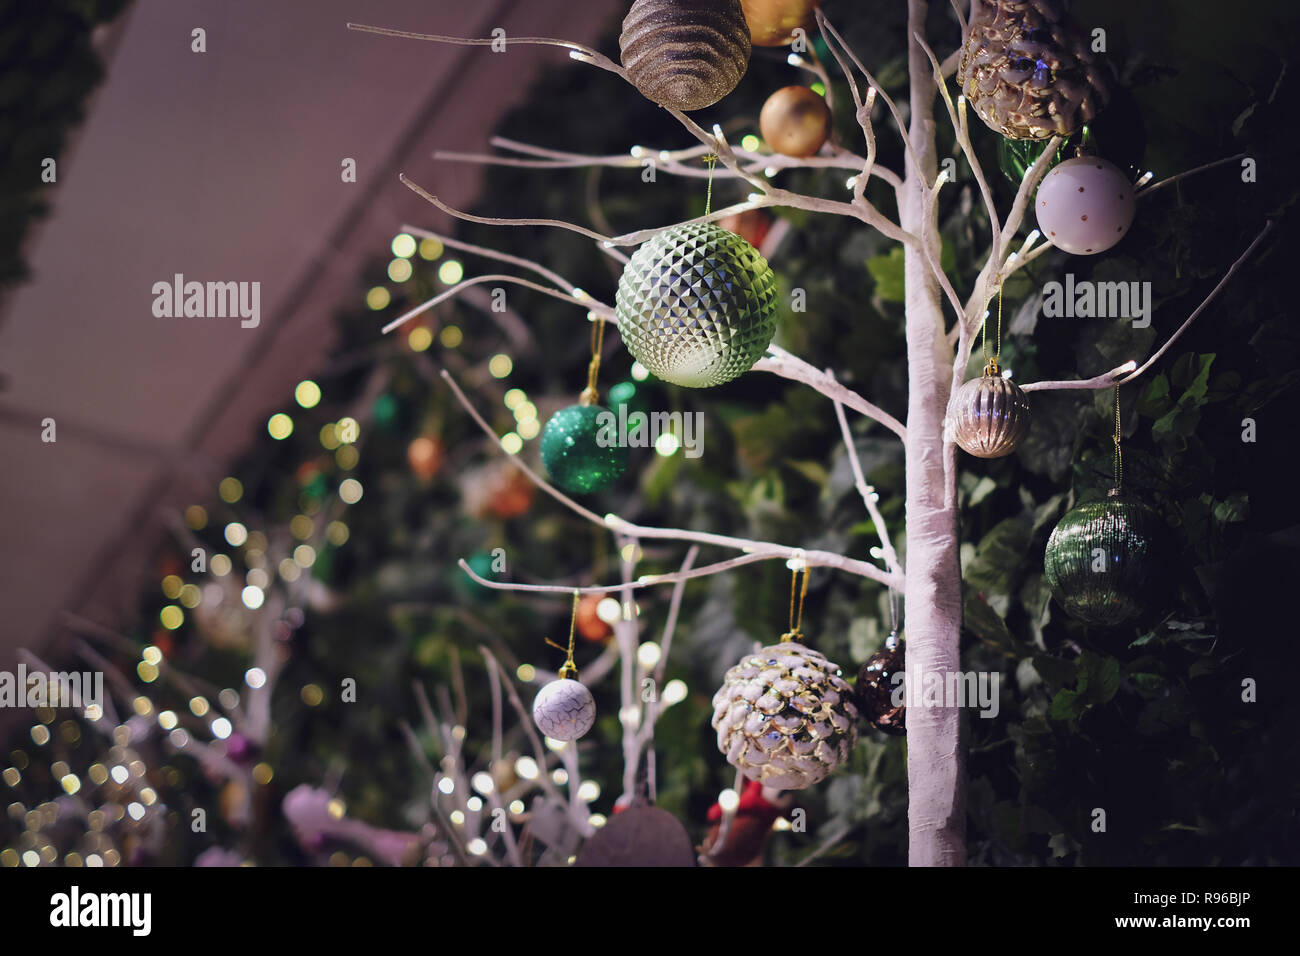 Décoration de Noël sur le thème de la nature à partir de low angle view Banque D'Images